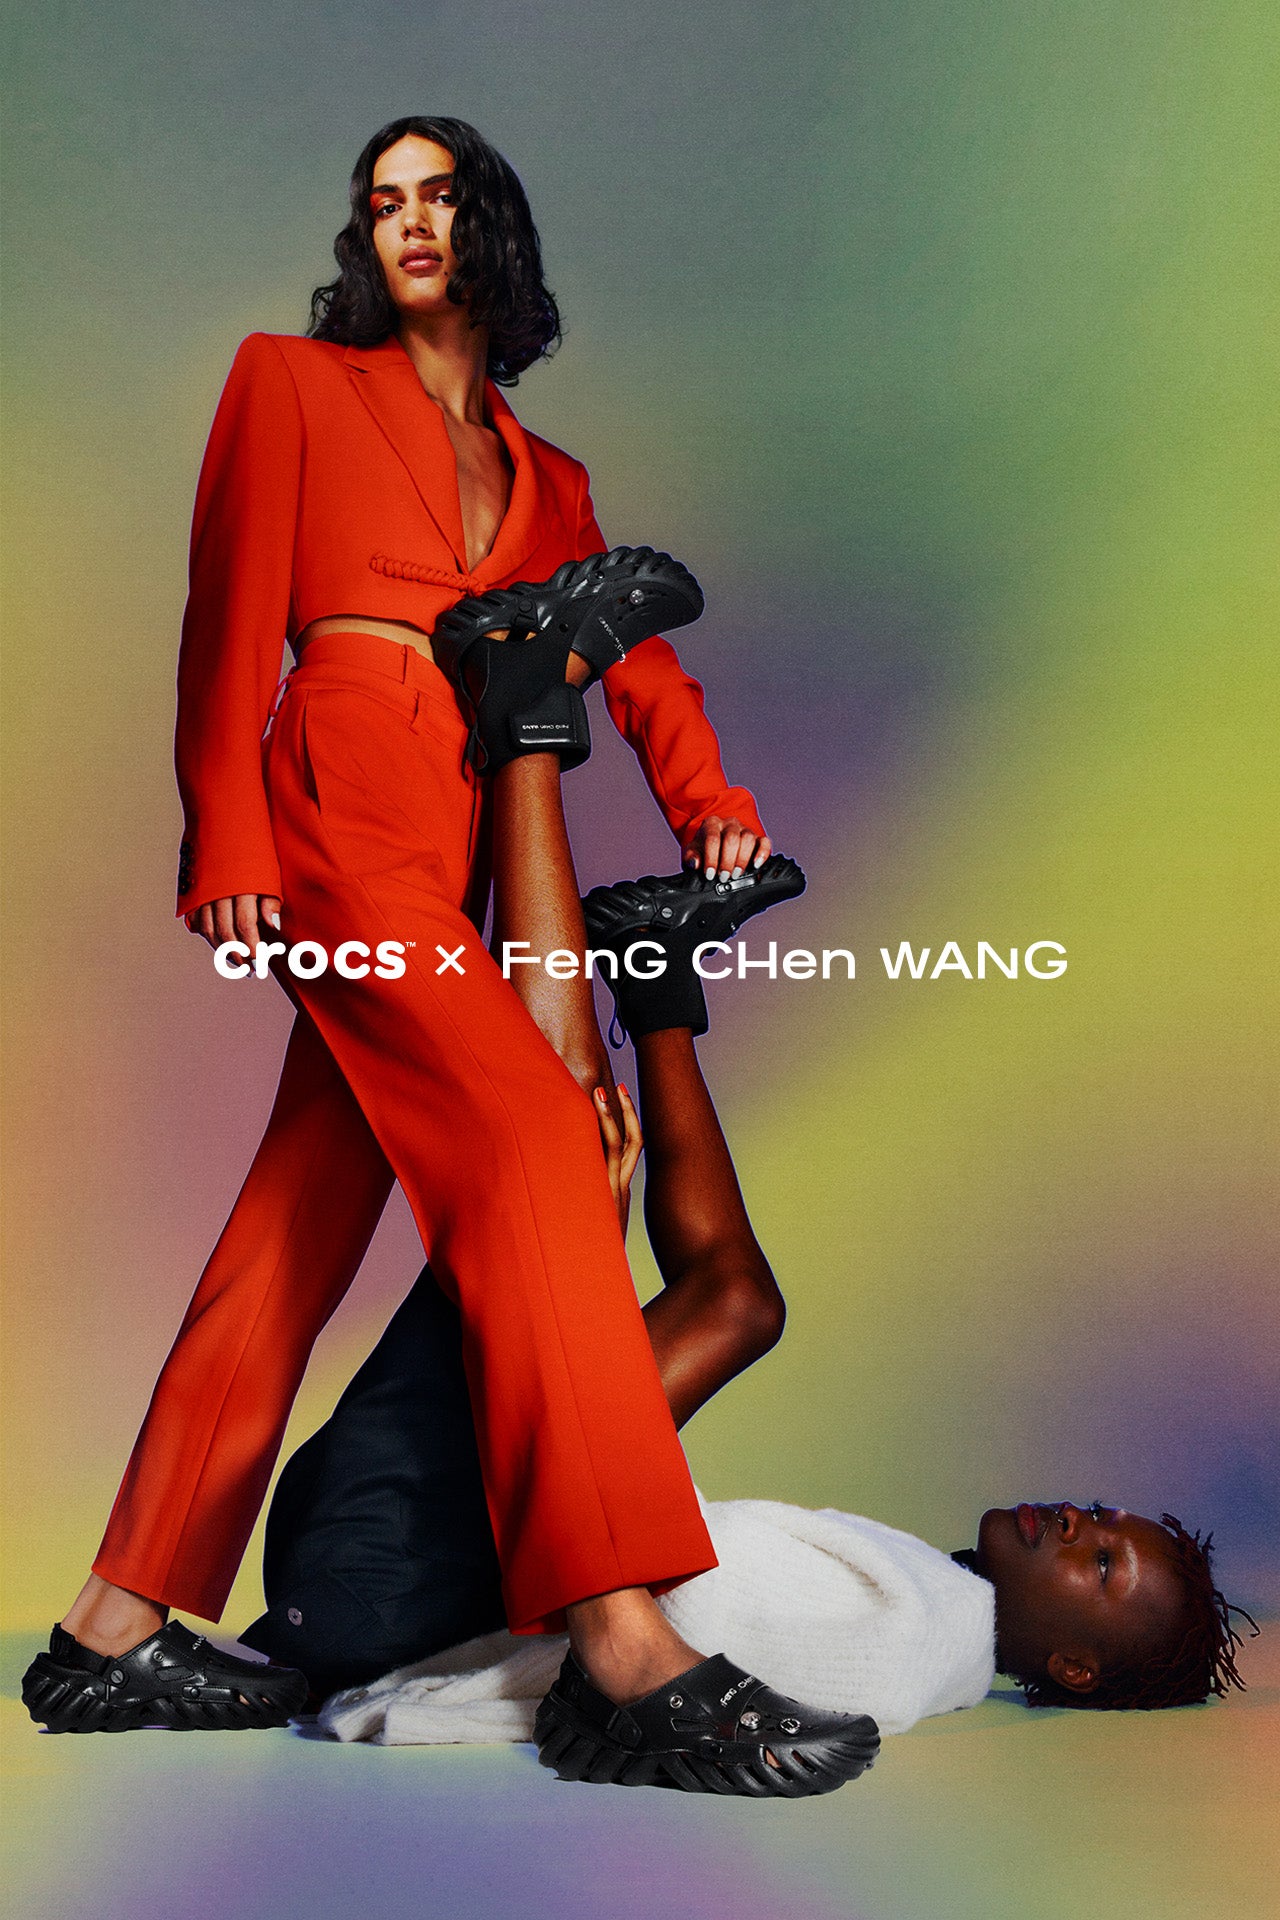 Crocs – Feng Chen Wang